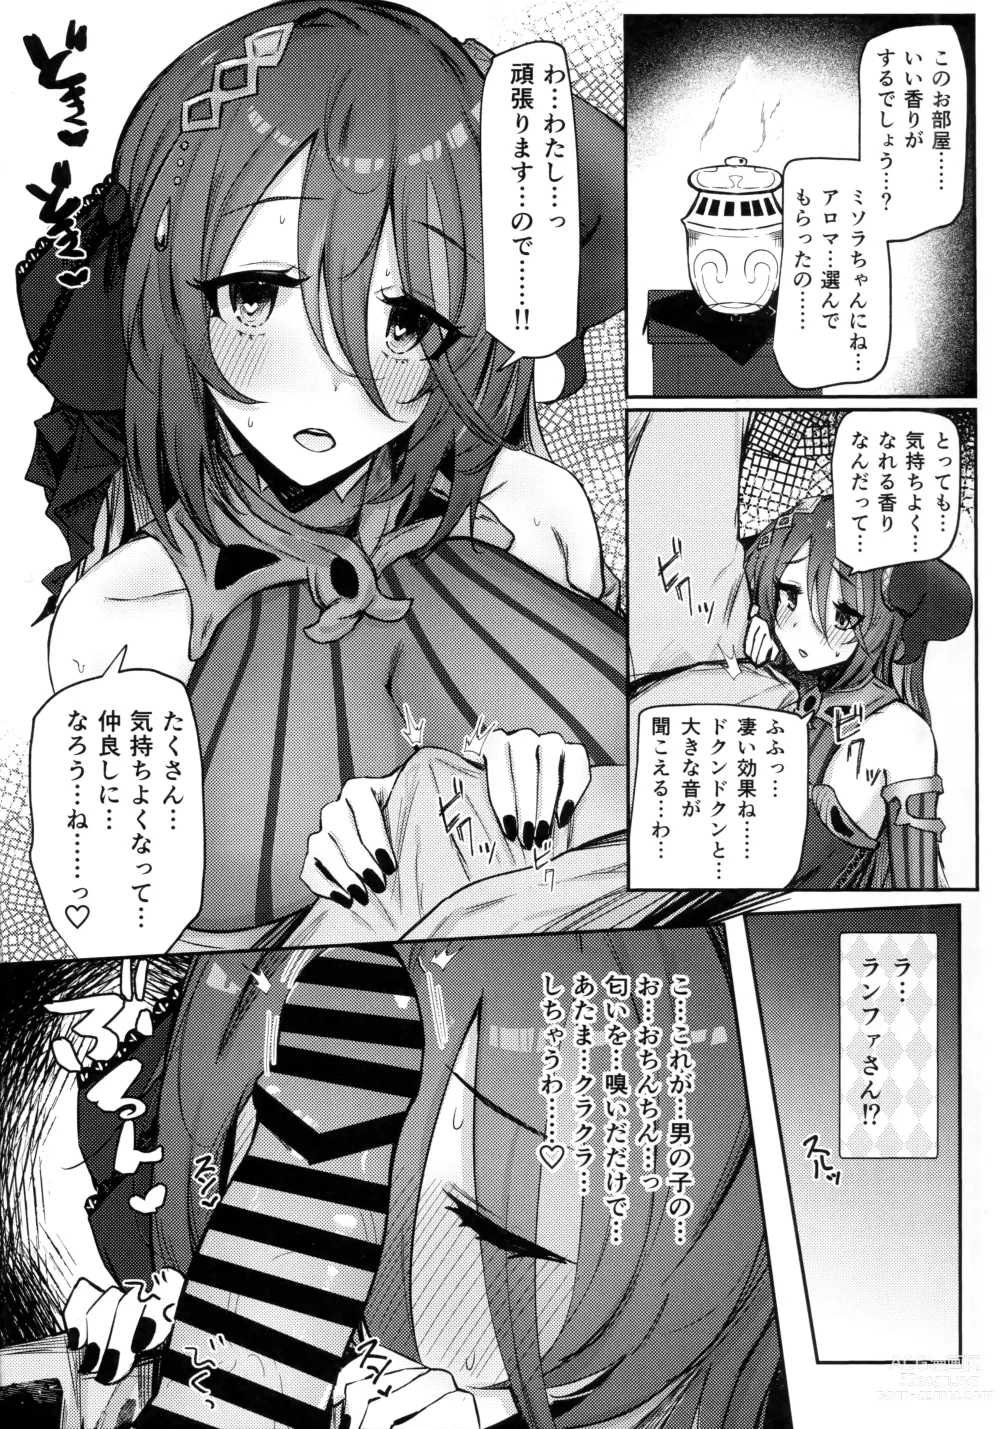 Page 7 of doujinshi Good luck! Ranpha-san!